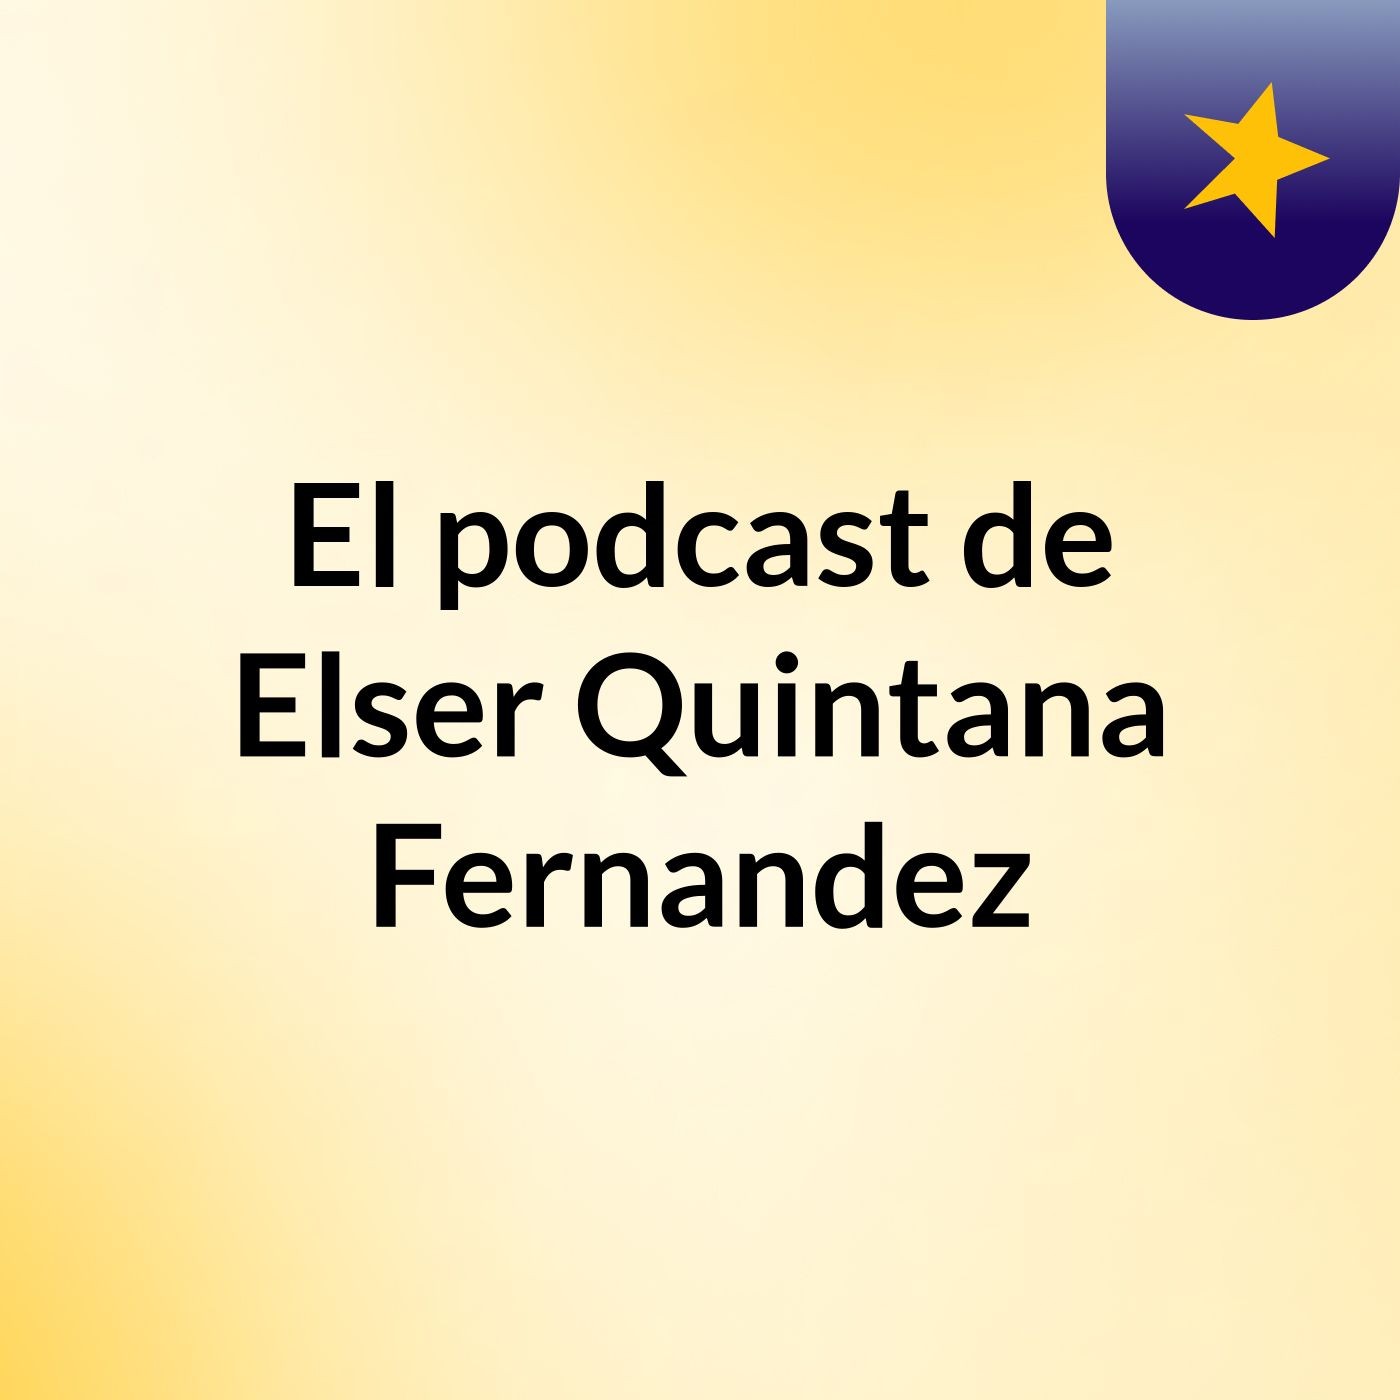 El podcast de Elser Quintana Fernandez